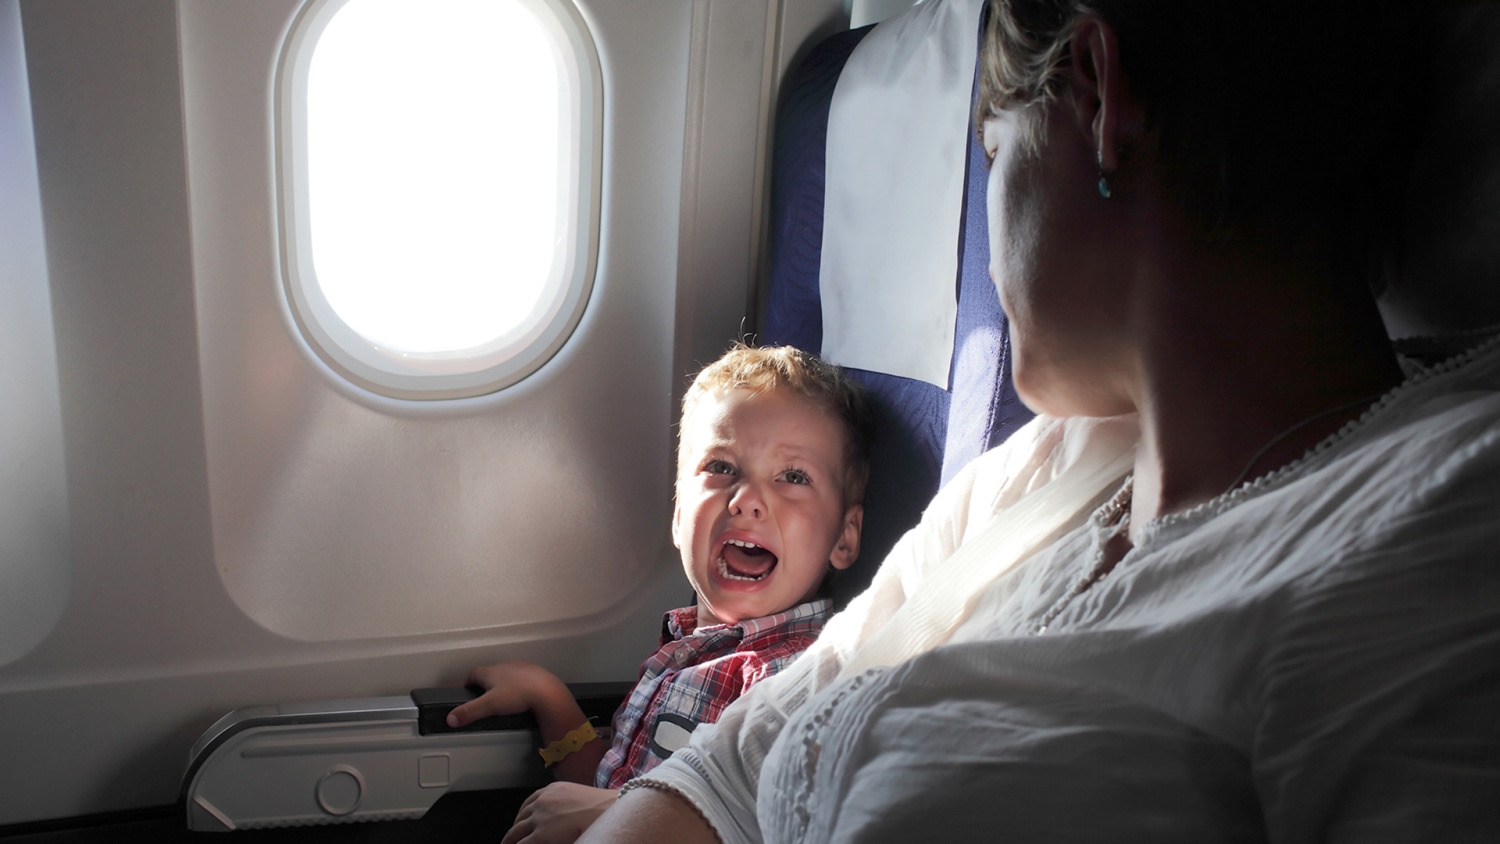 psicologiasdobrasil.com.br - Companhia aérea oferece assentos "longe de crianças", onde menores de 12 anos são proibidos